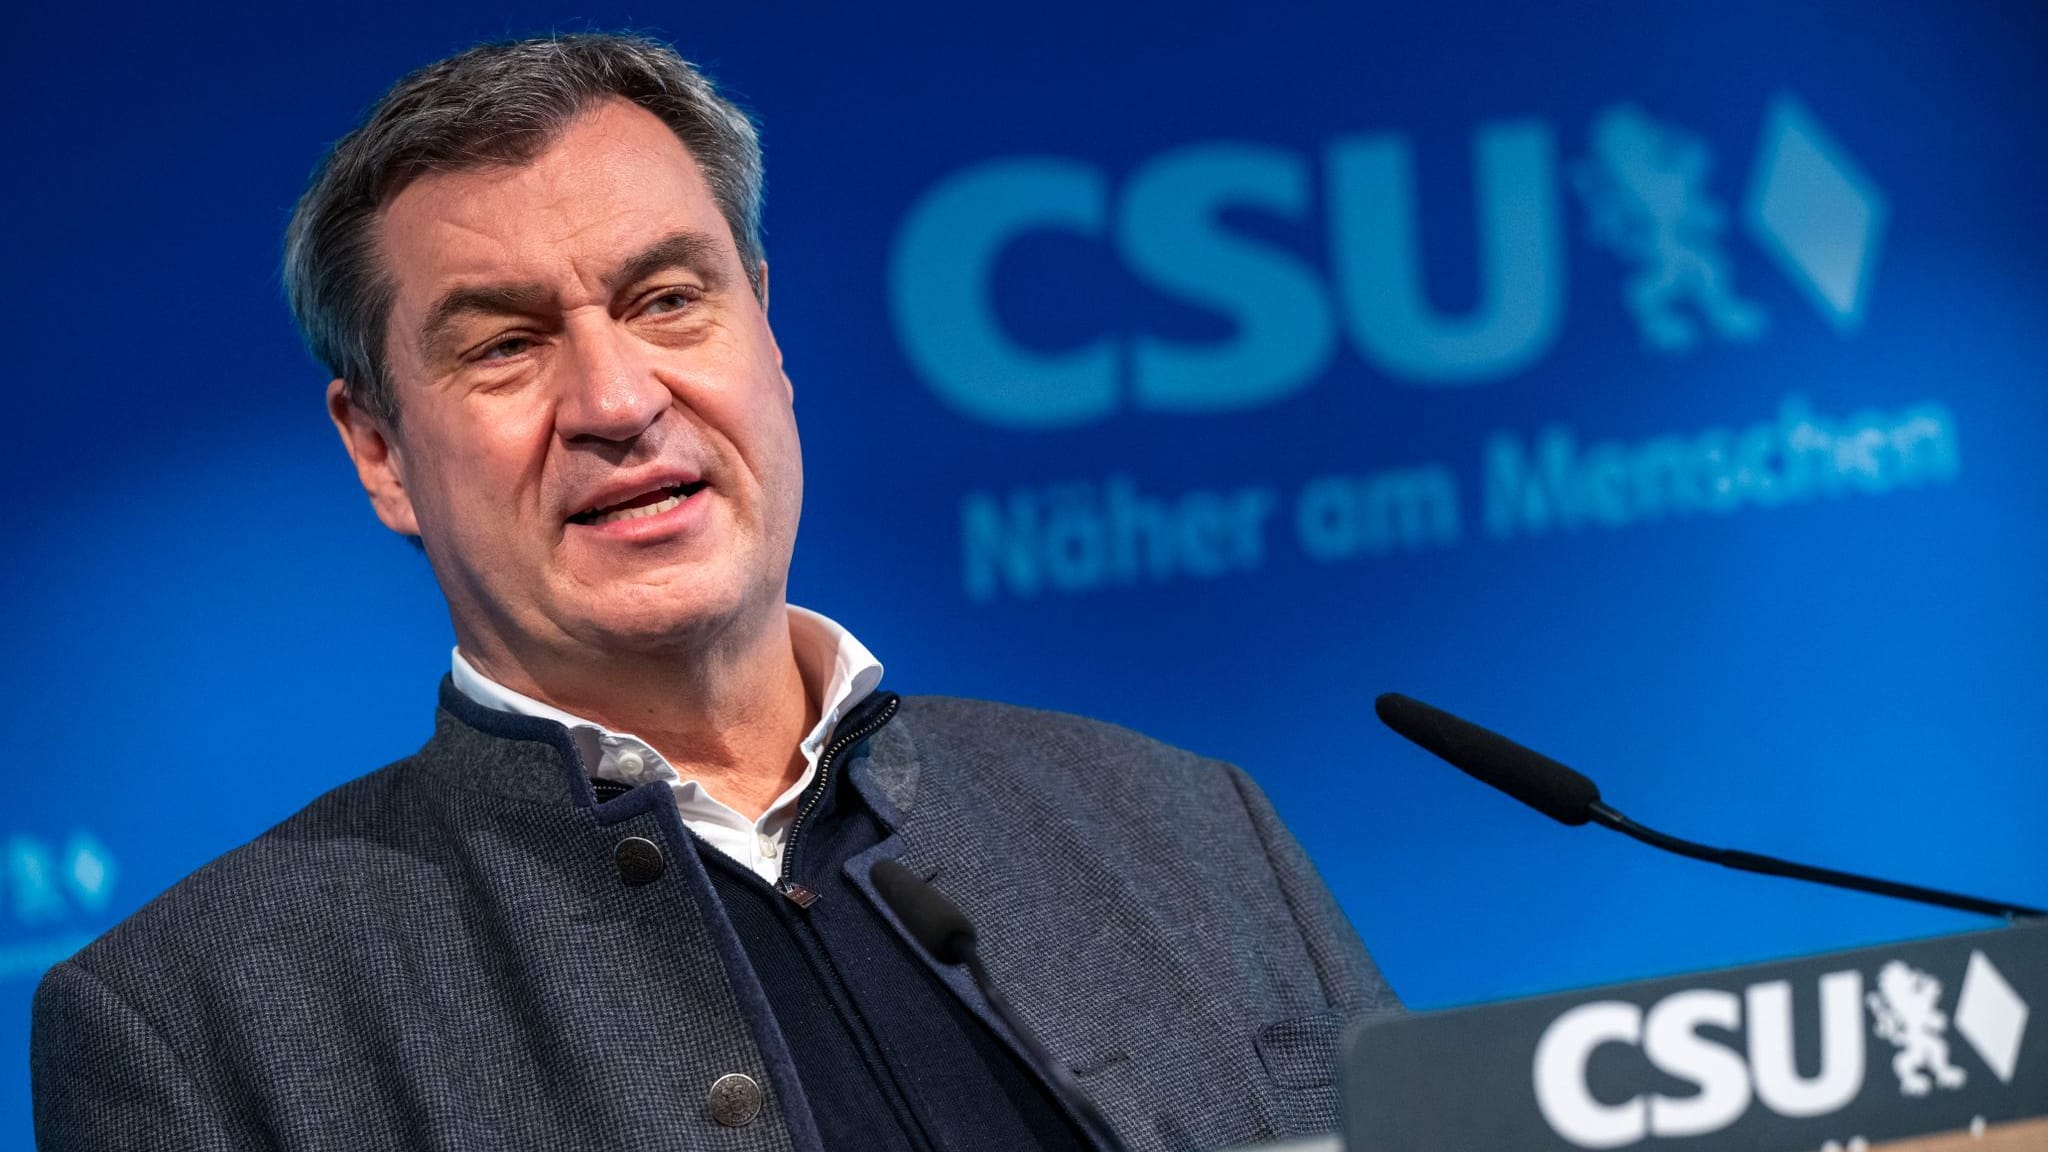 CSU-Chef Markus Söder kritisiert Annalena Baerbock: “Internationaler Schaden”